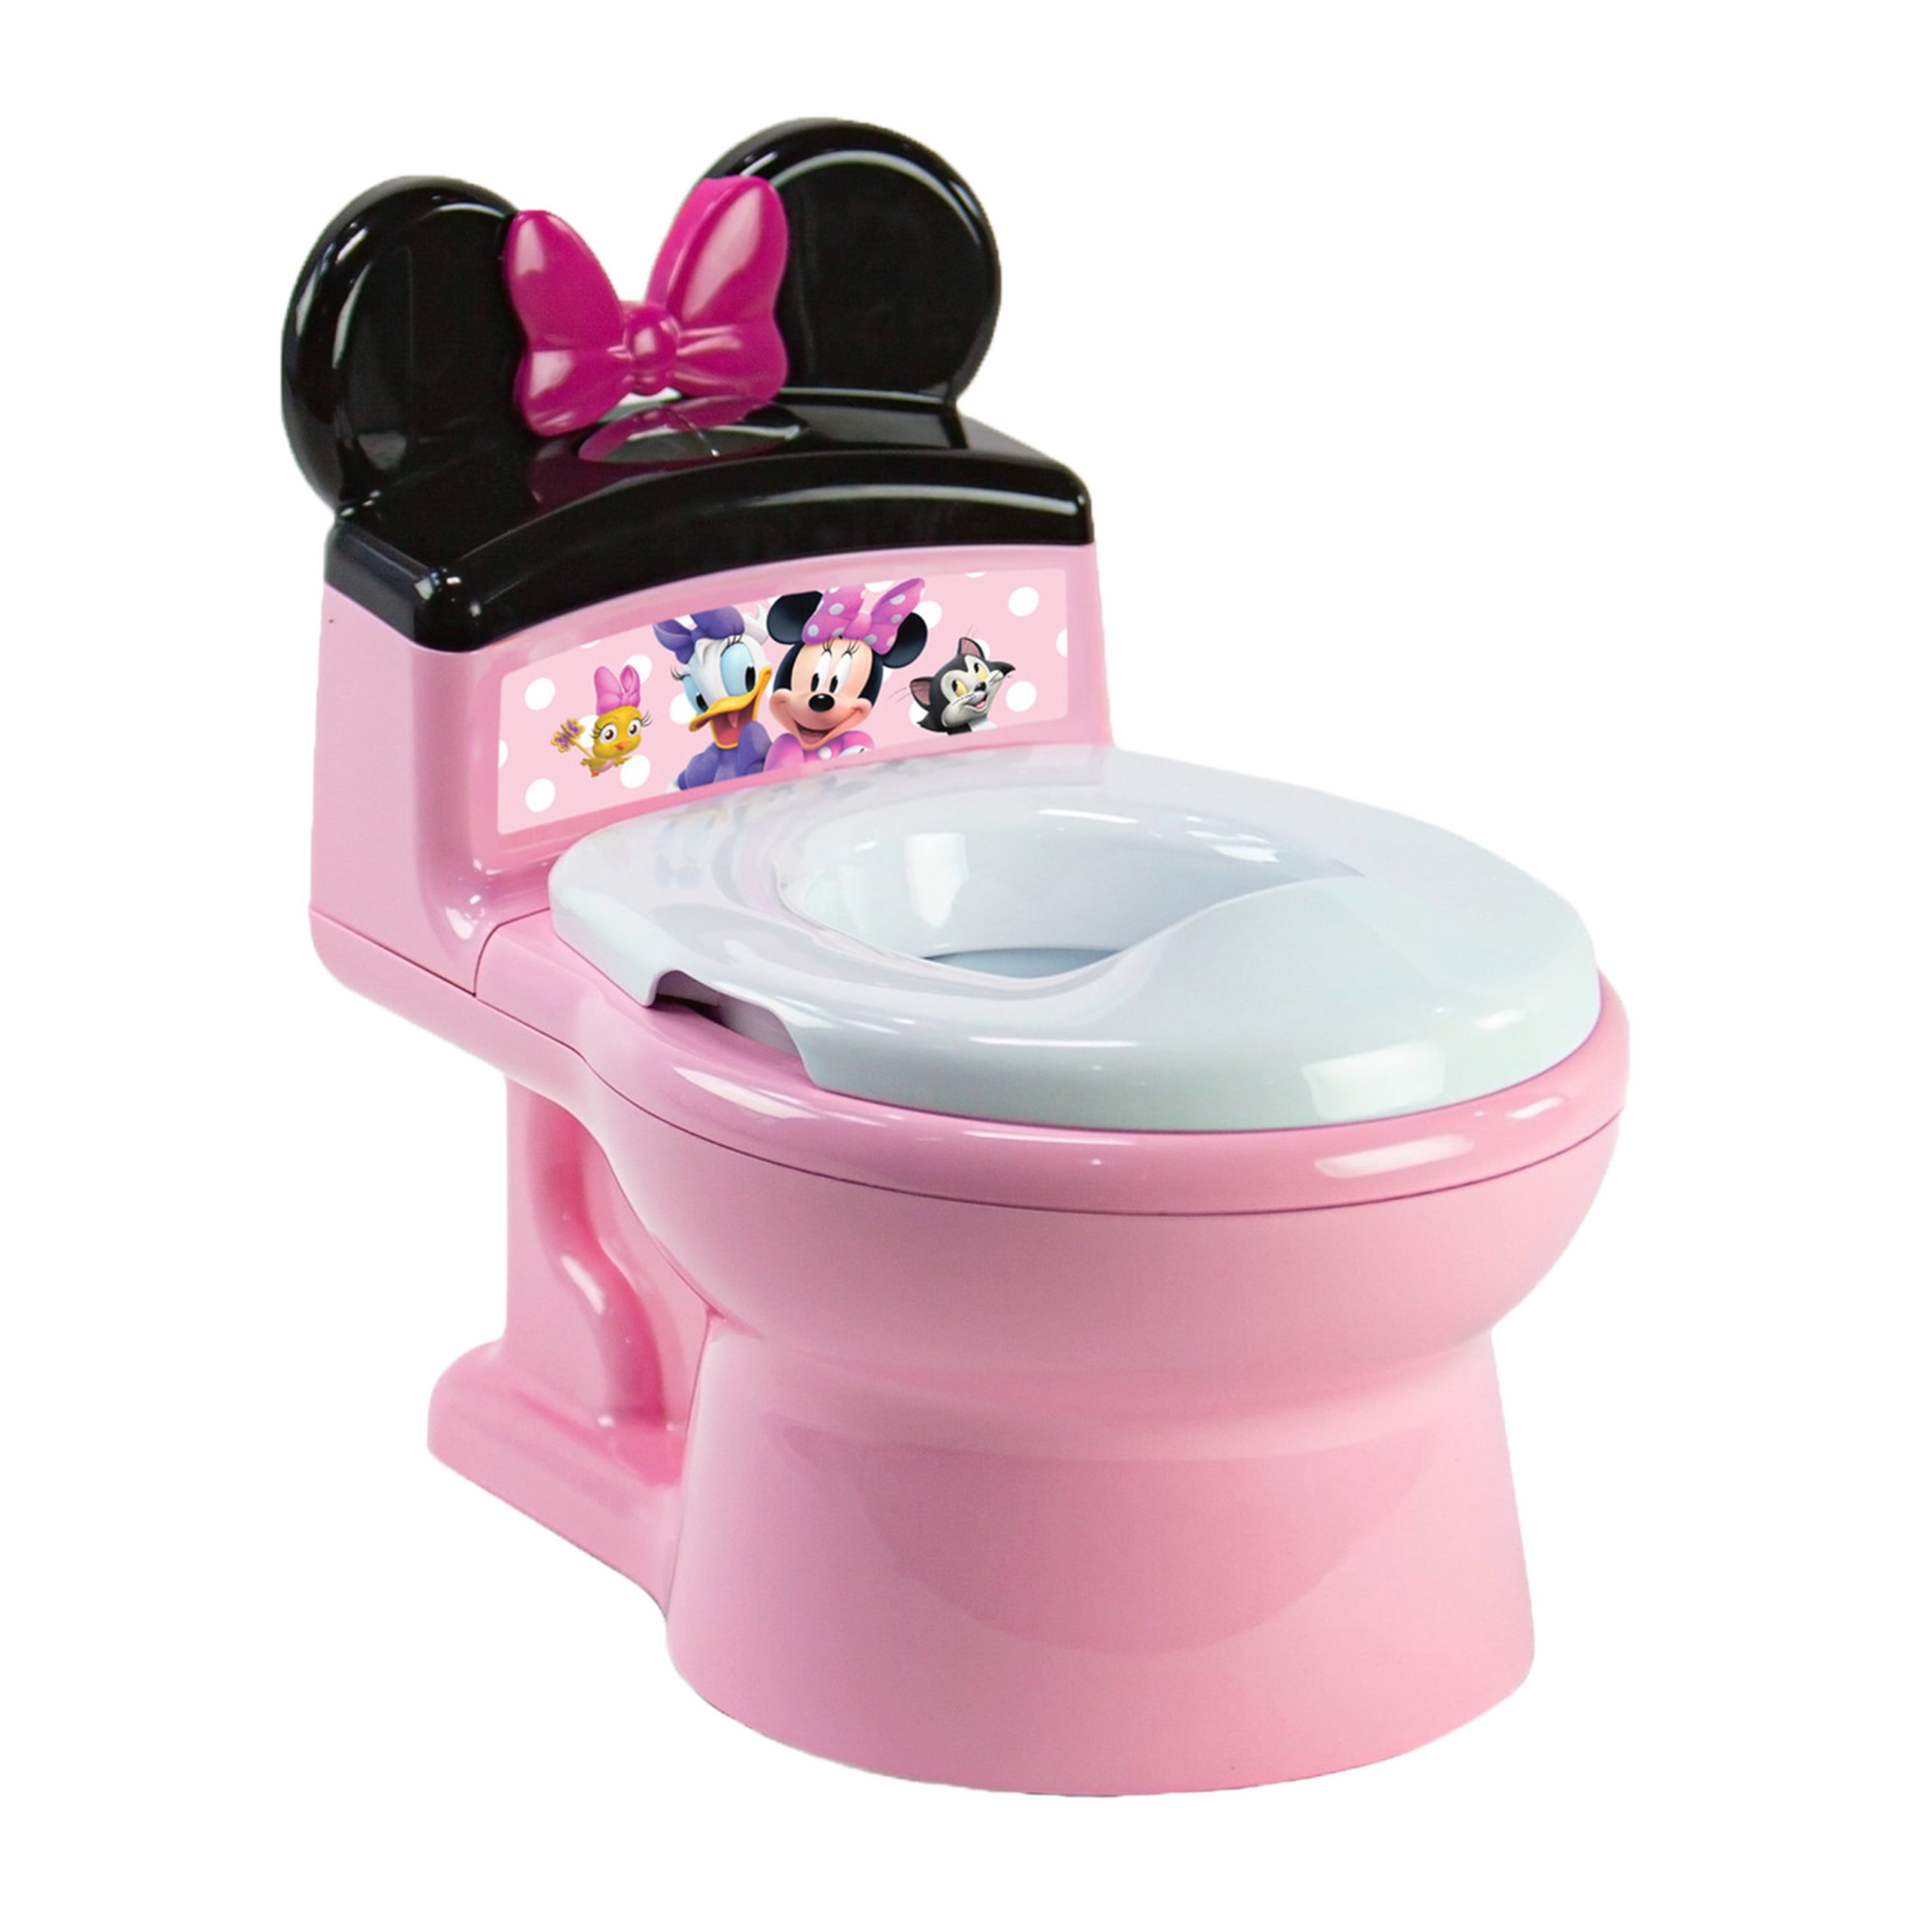 BABY Children Toddler Toilet Step Stool design Disney Mickey Minnie Snow Queen 